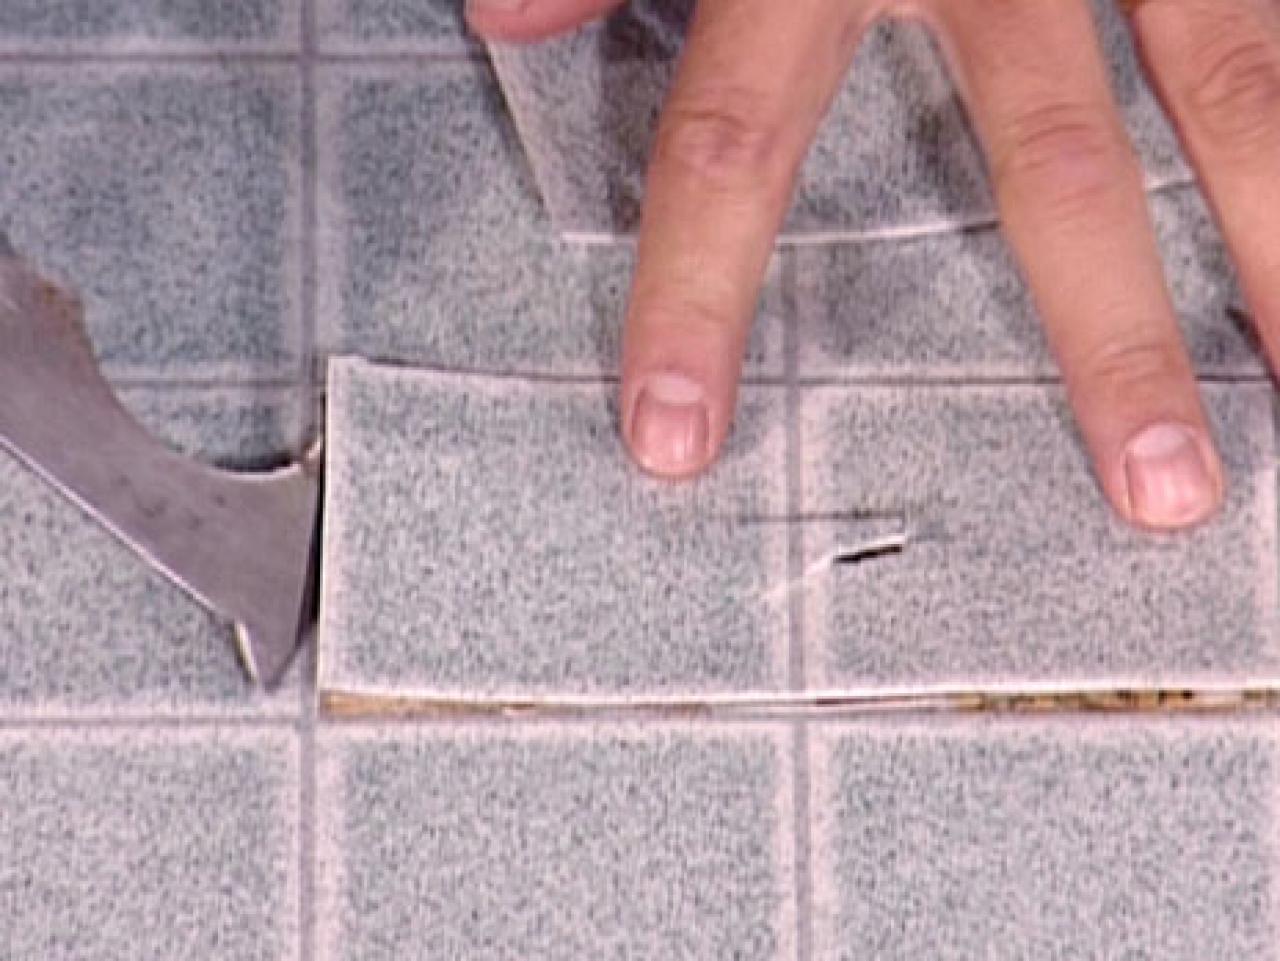 How To Patch Vinyl Flooring Tos Diy, How To Repair Tear In Vinyl Flooring